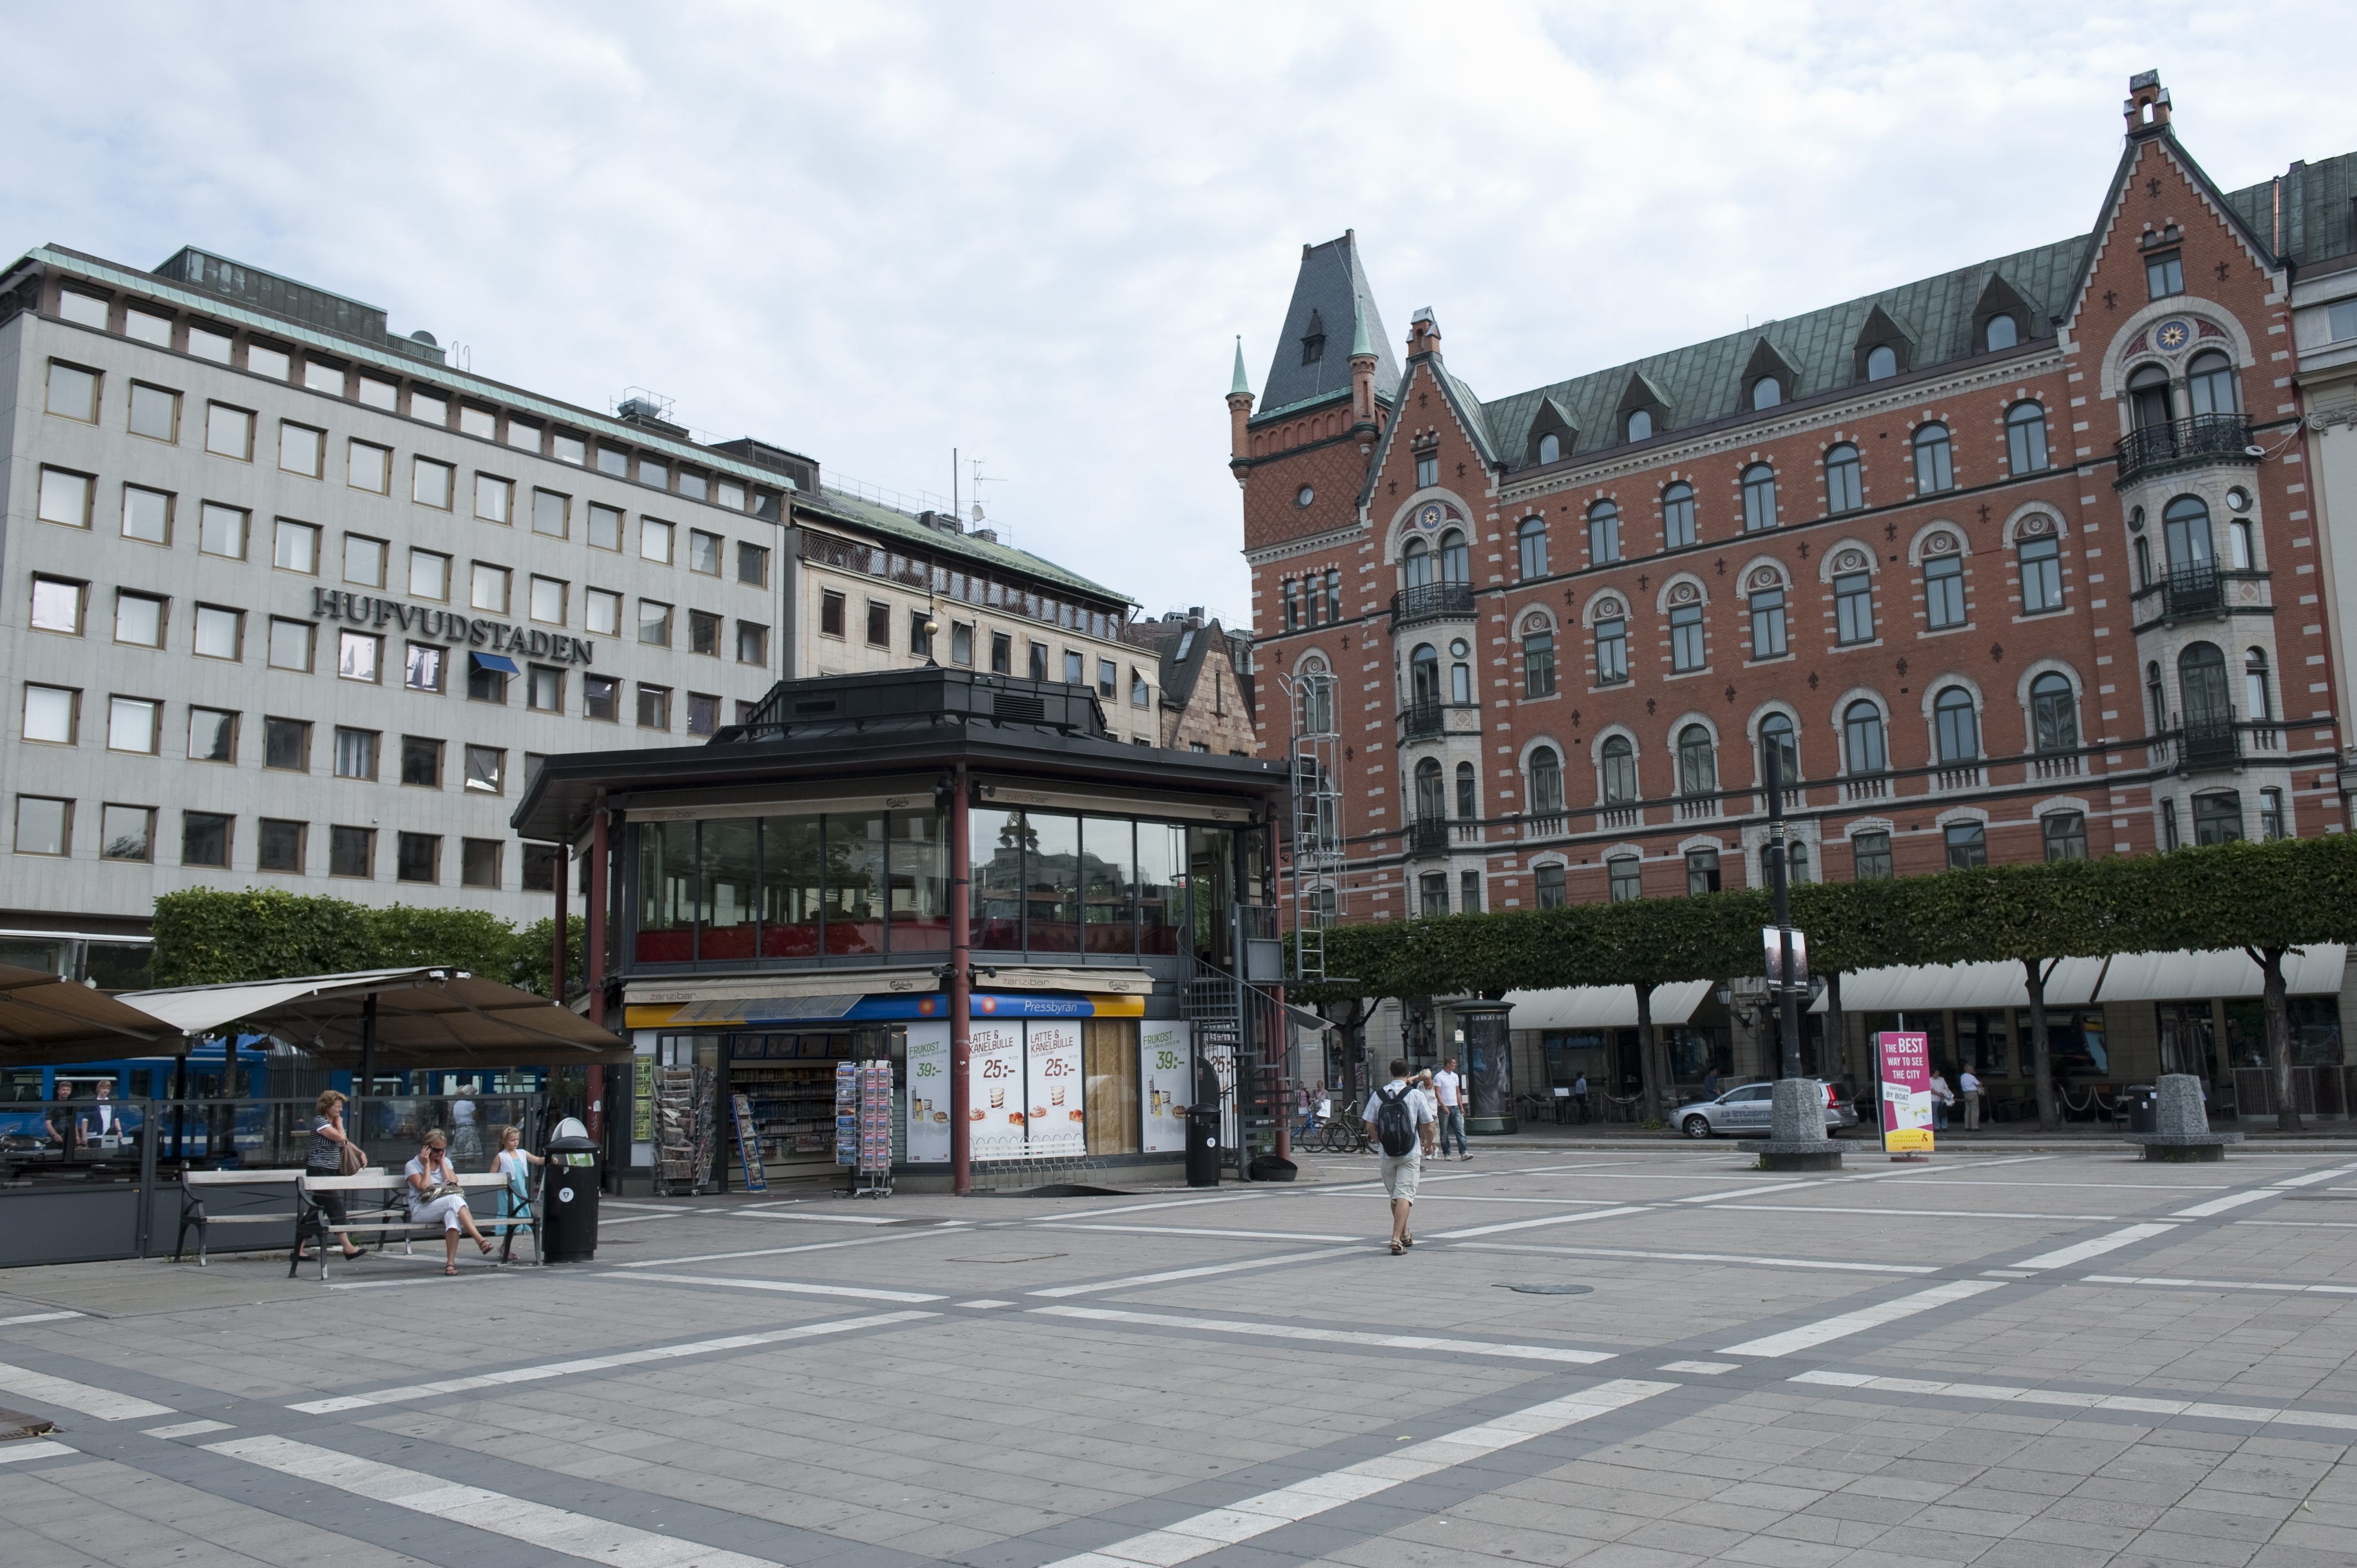 En av de platser i stockholm som flest brott begås enligt statistik.